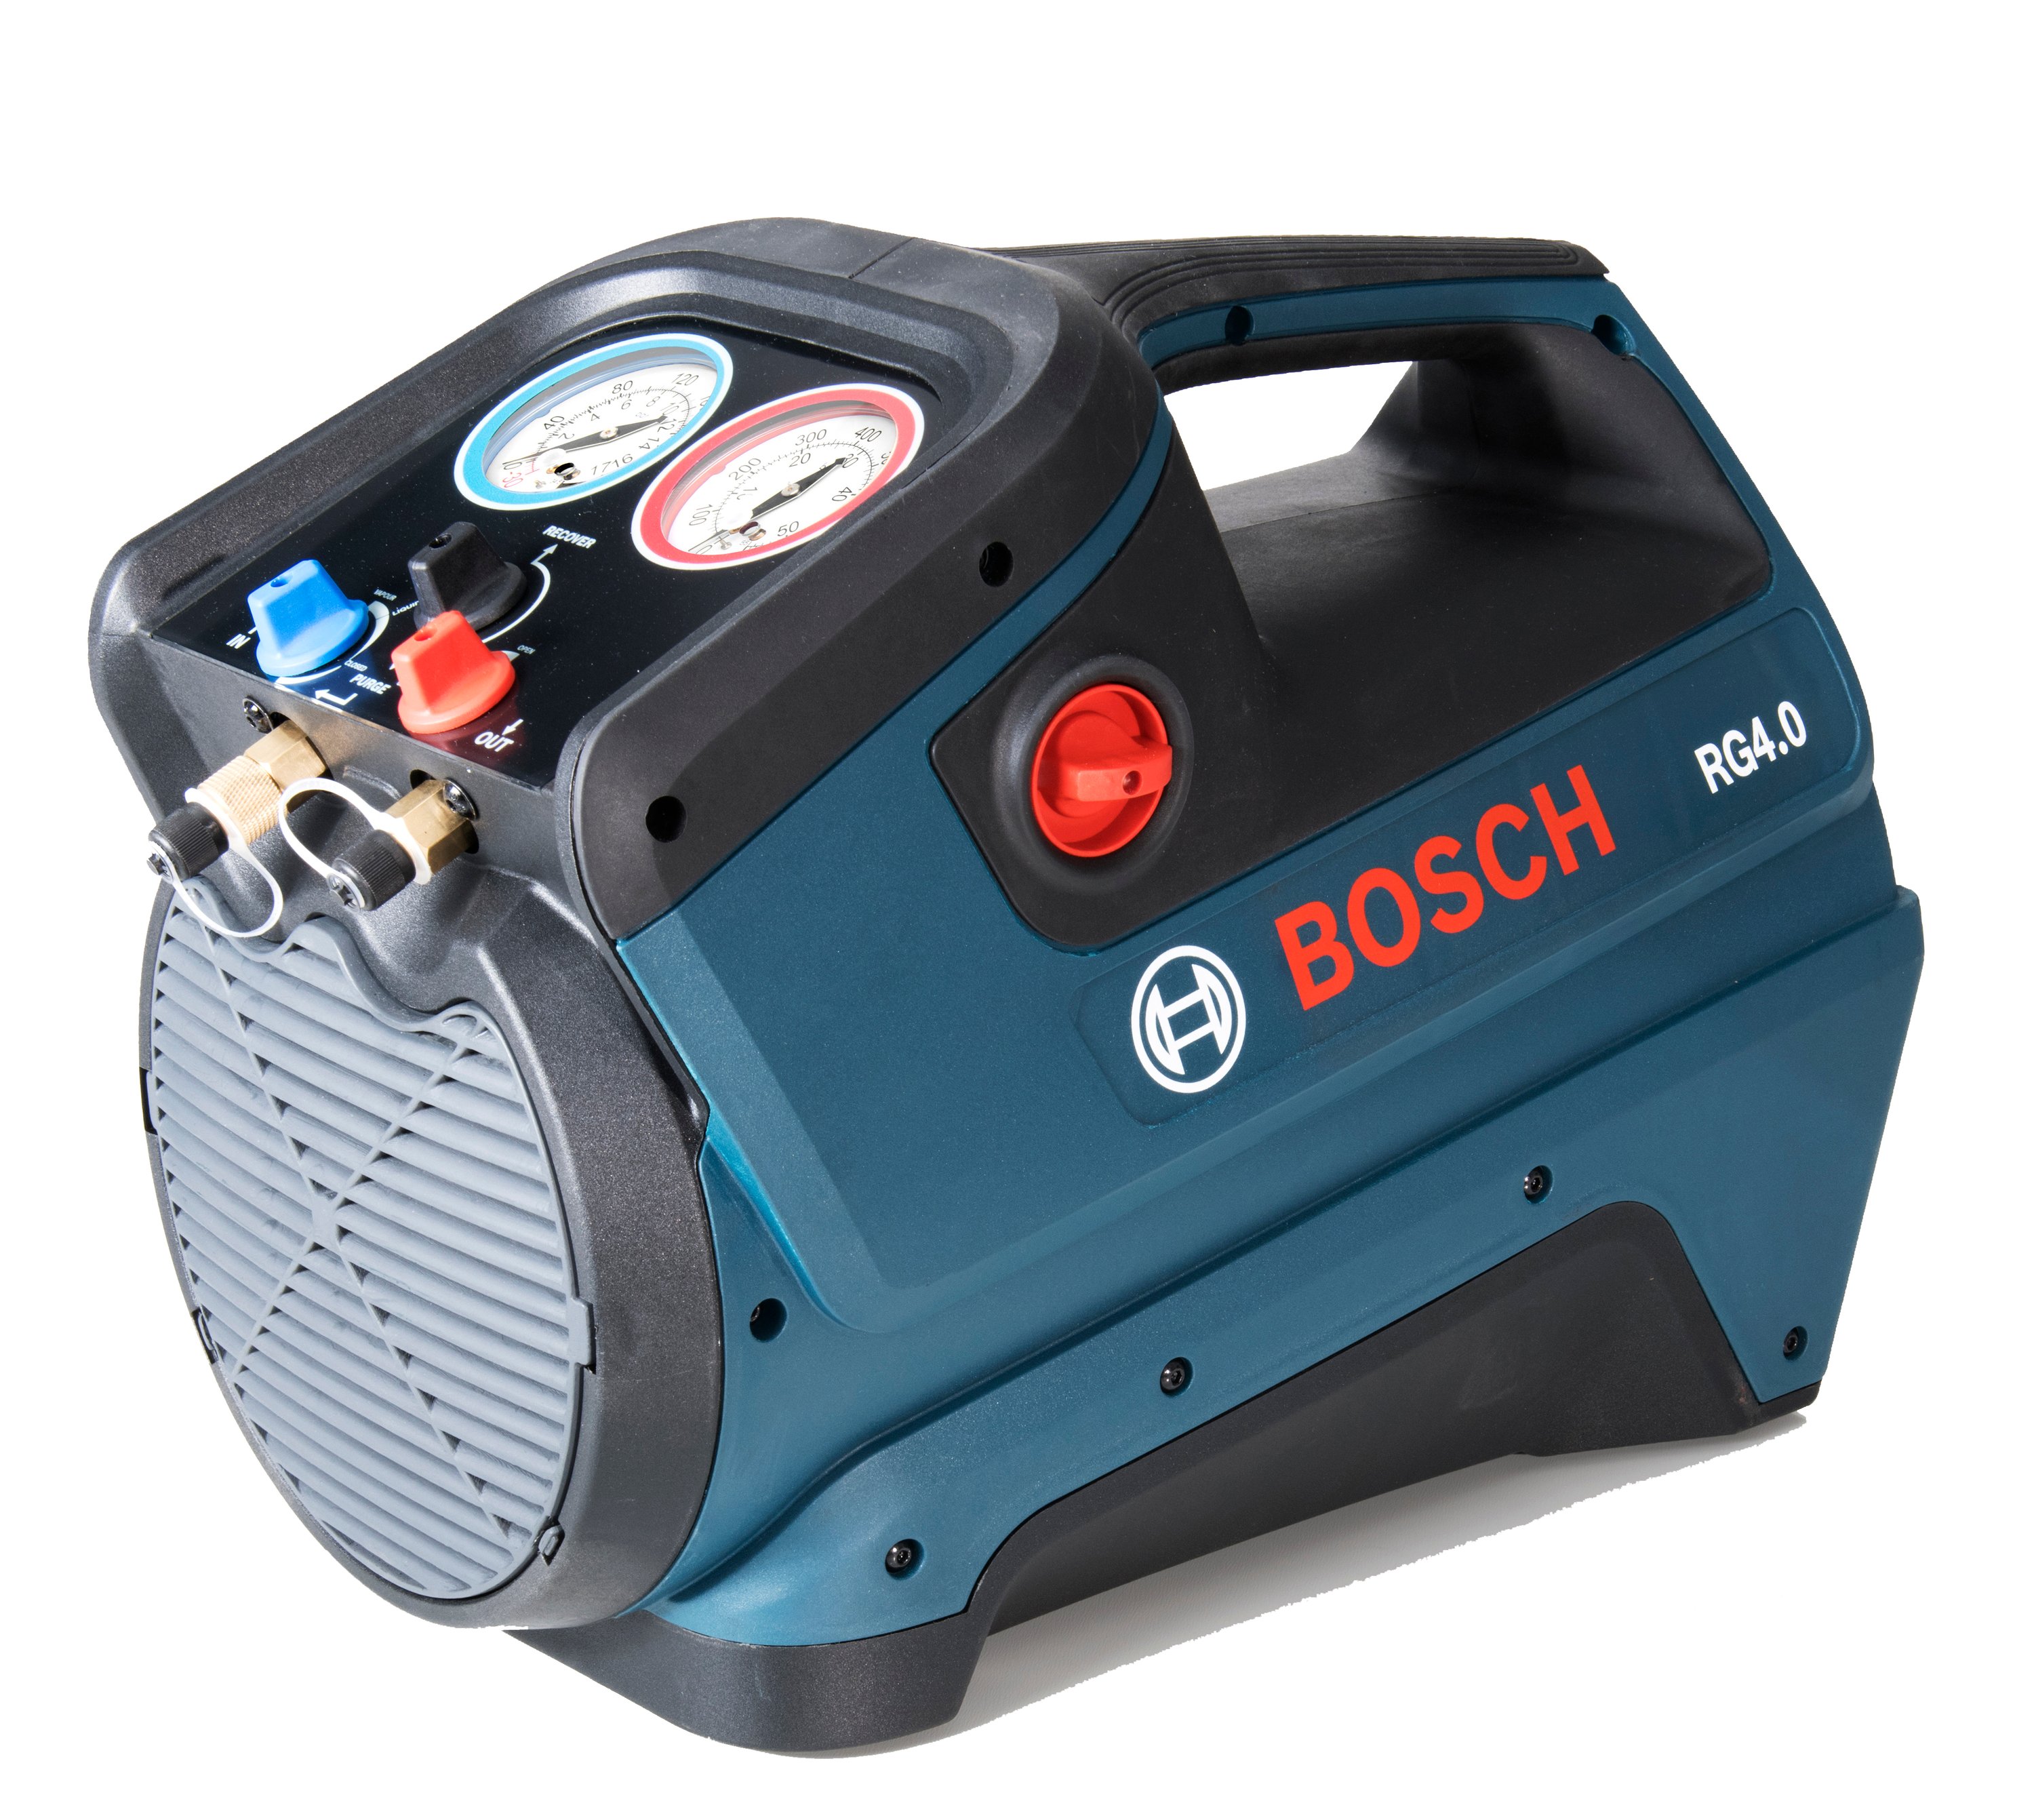 Wysokocisnieniowe urzadzenie odciagowe Bosch RG 4.0